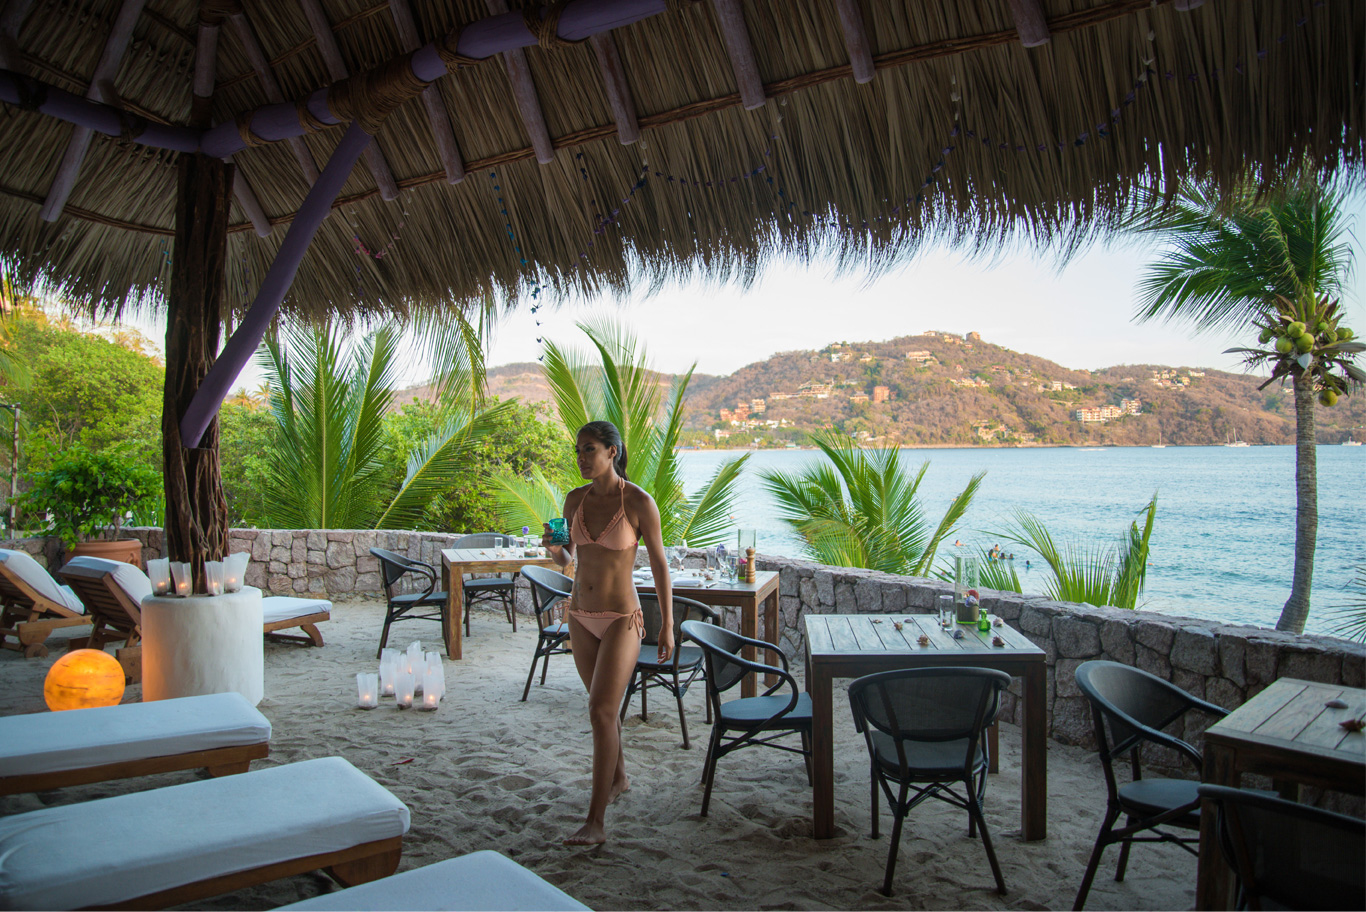 Palapa hotel de lujo de playa zihuatanejo ixtapa : El ensueno